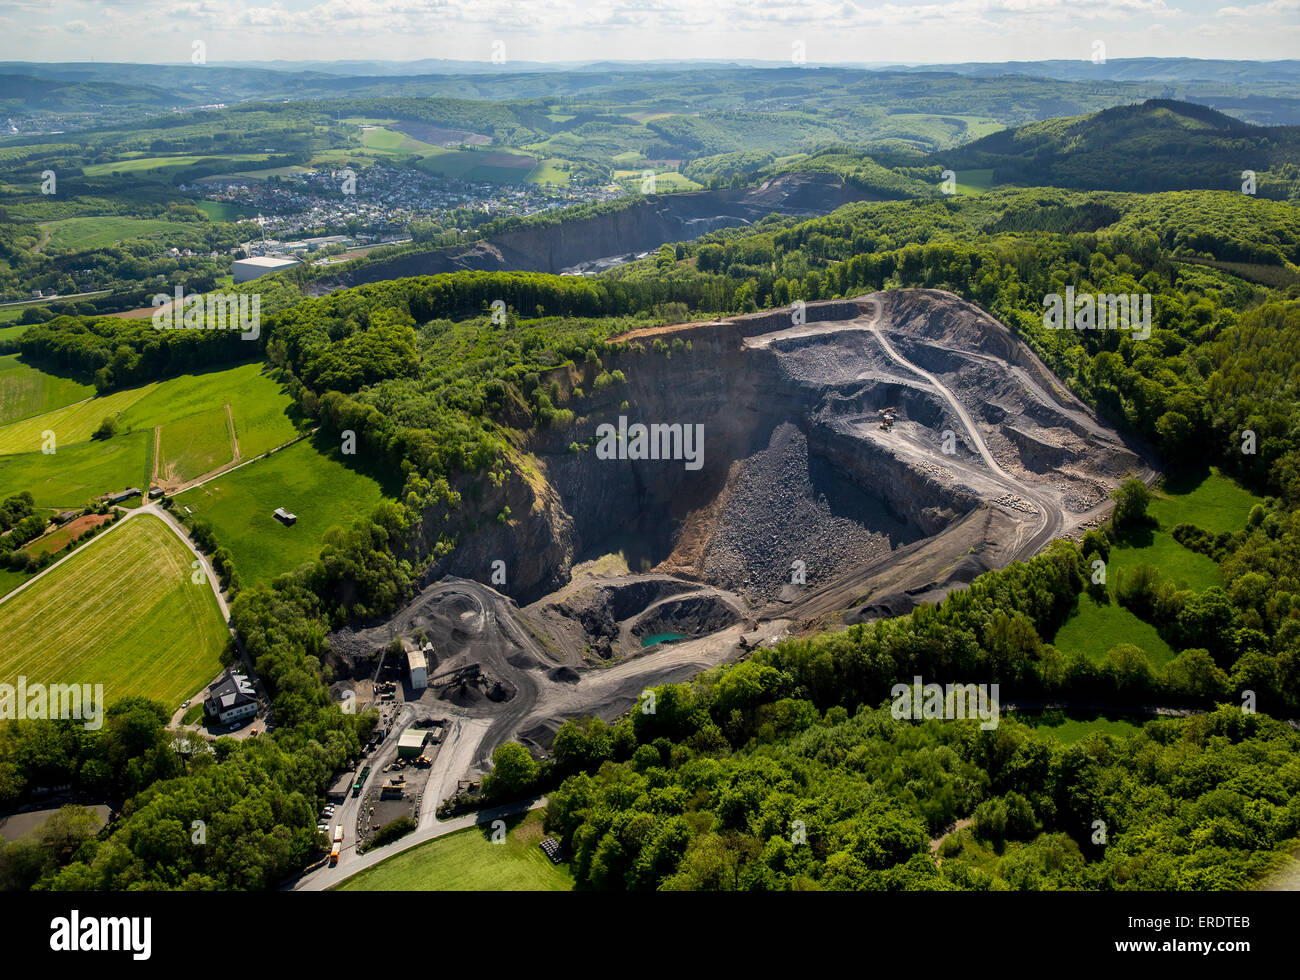 Kalkstein Bergbau, entwickelnden Gebiet unterhalb des Steinbruchs Herdringen Steinbruch Ebel, Arnsberg, Sauerland, Nordrhein-Westfalen, Deutschland Stockfoto